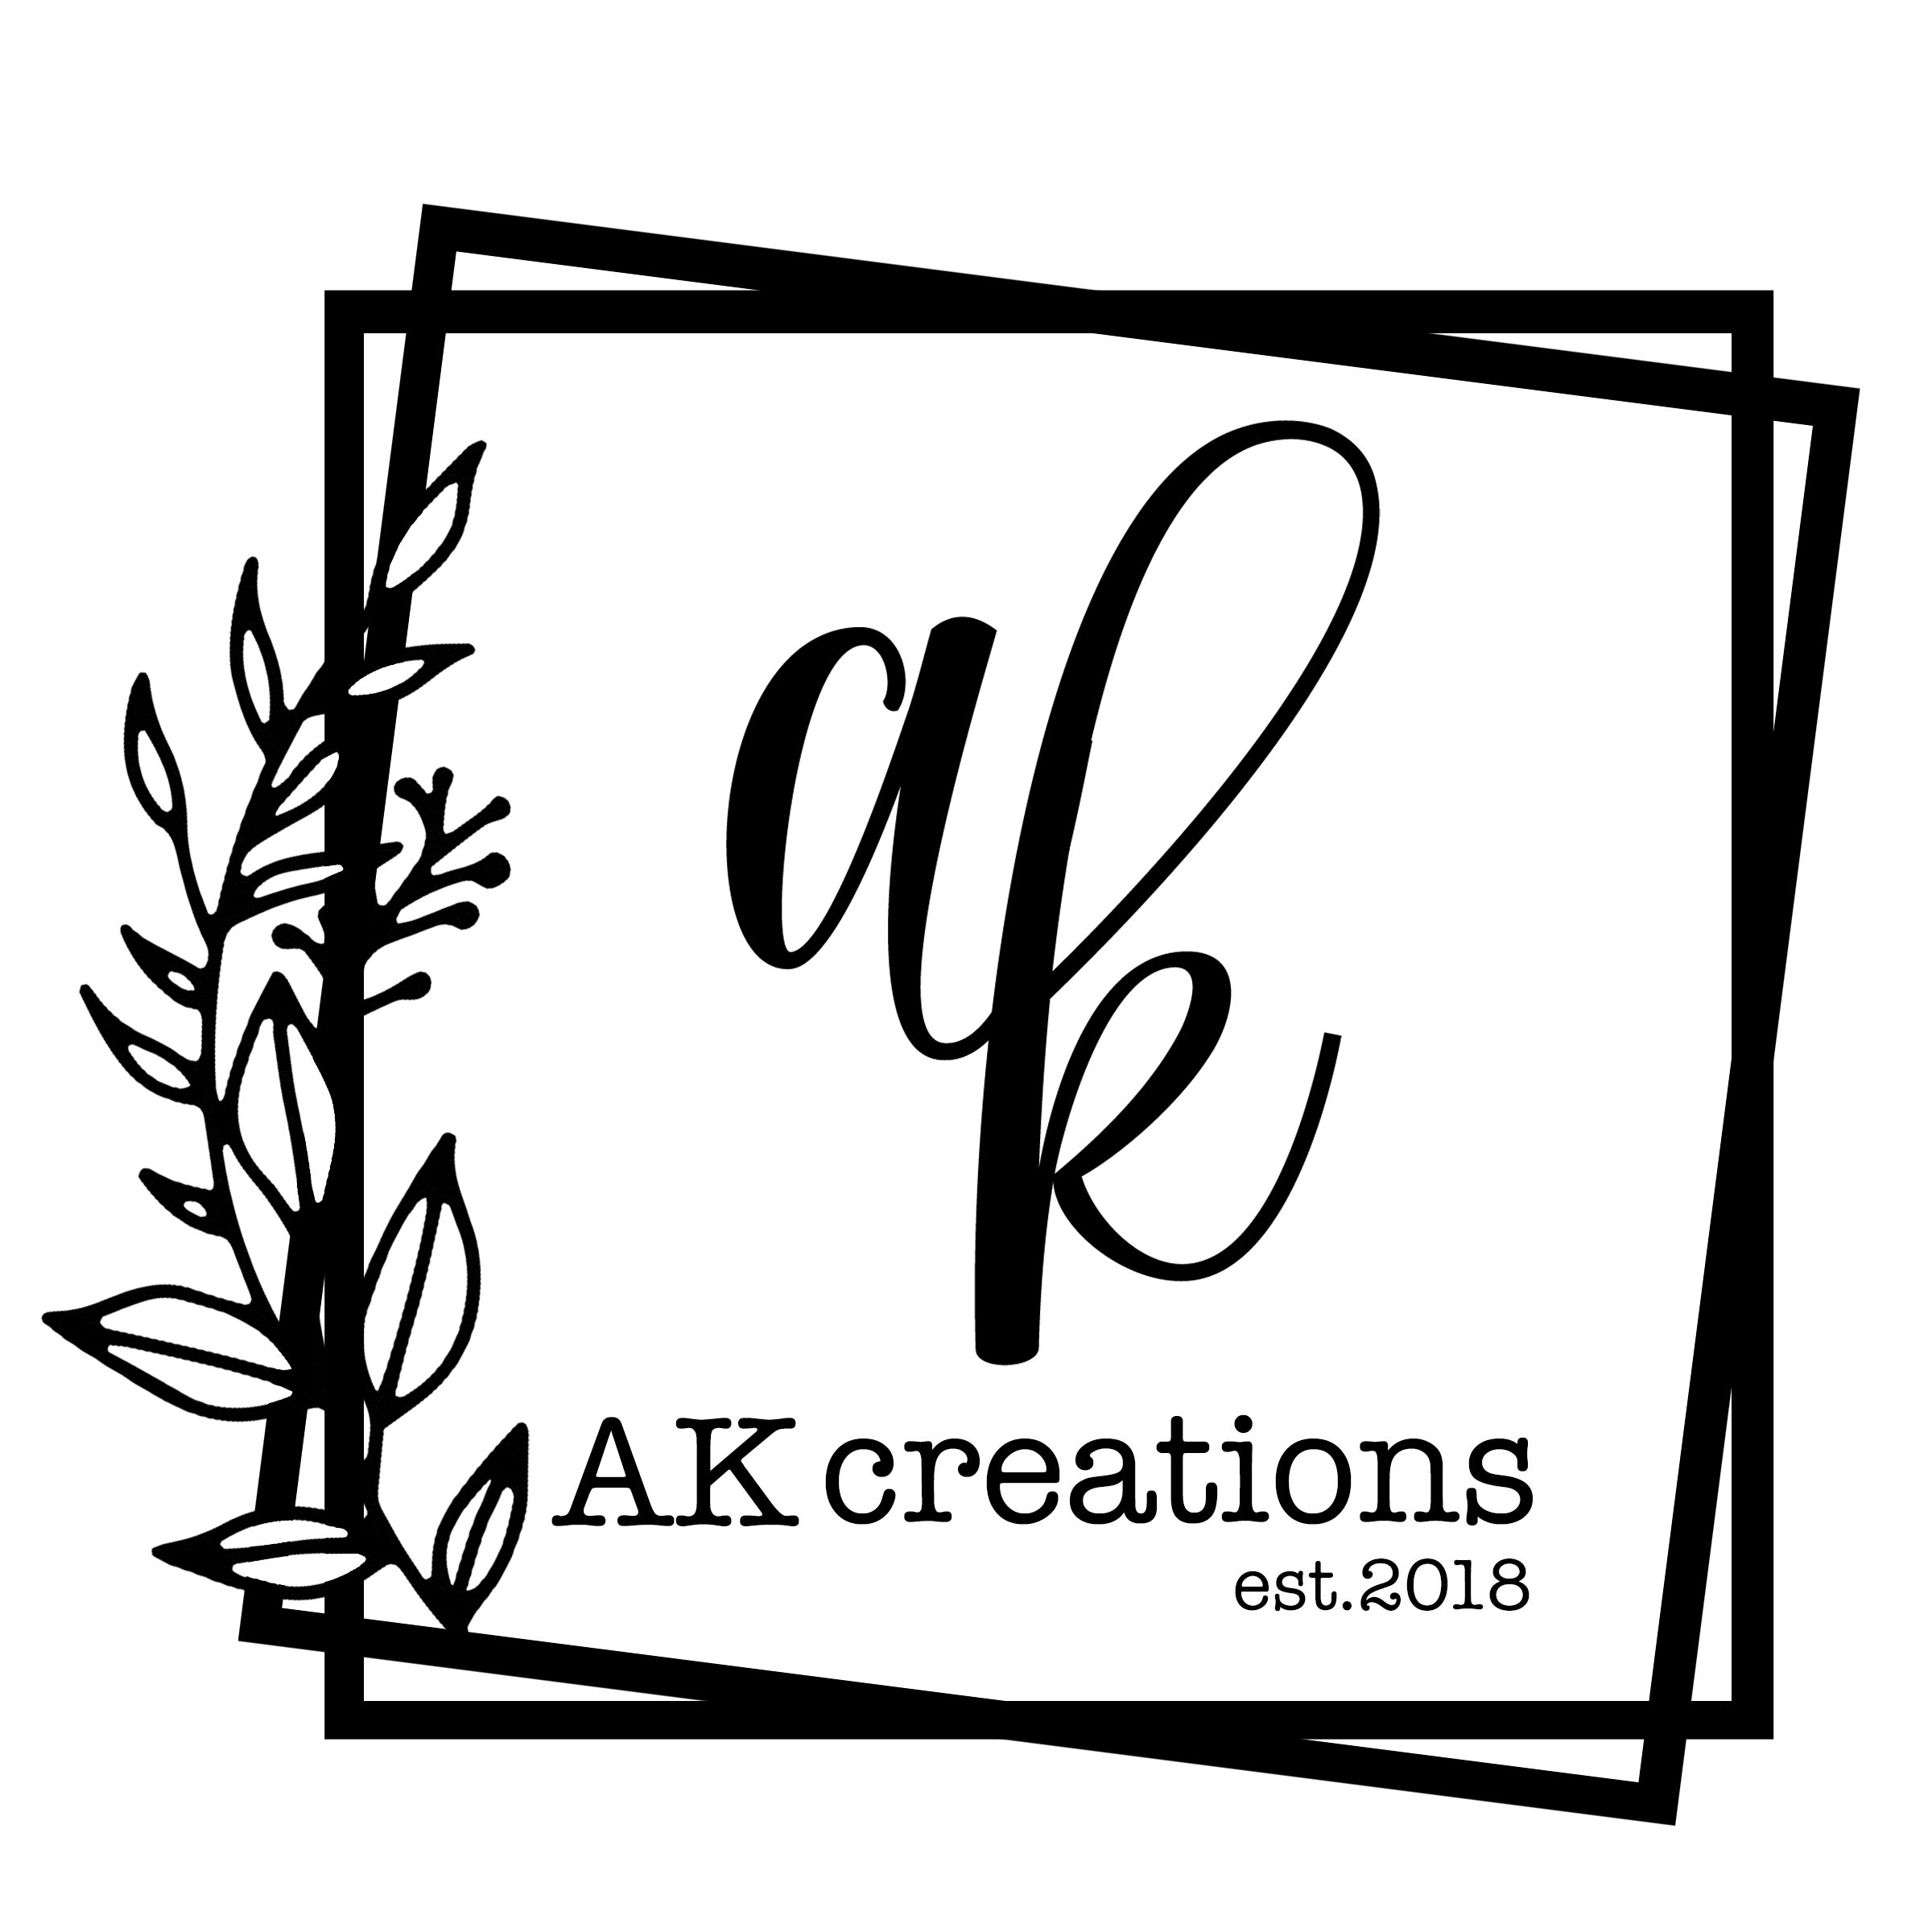 Ak Creation Editz - YouTube